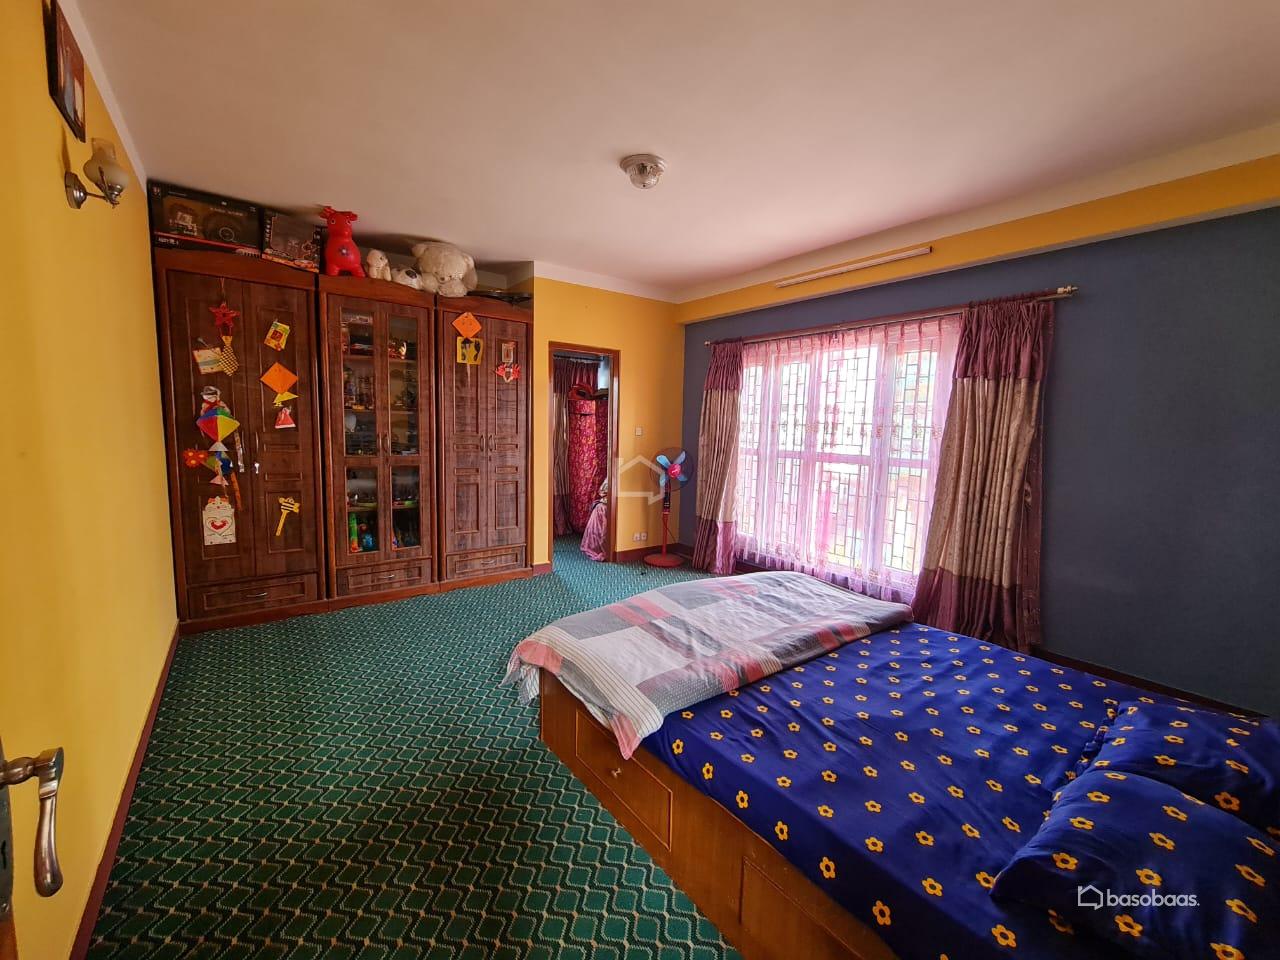 Residental : House for Sale in Nakkhu, Lalitpur Image 6